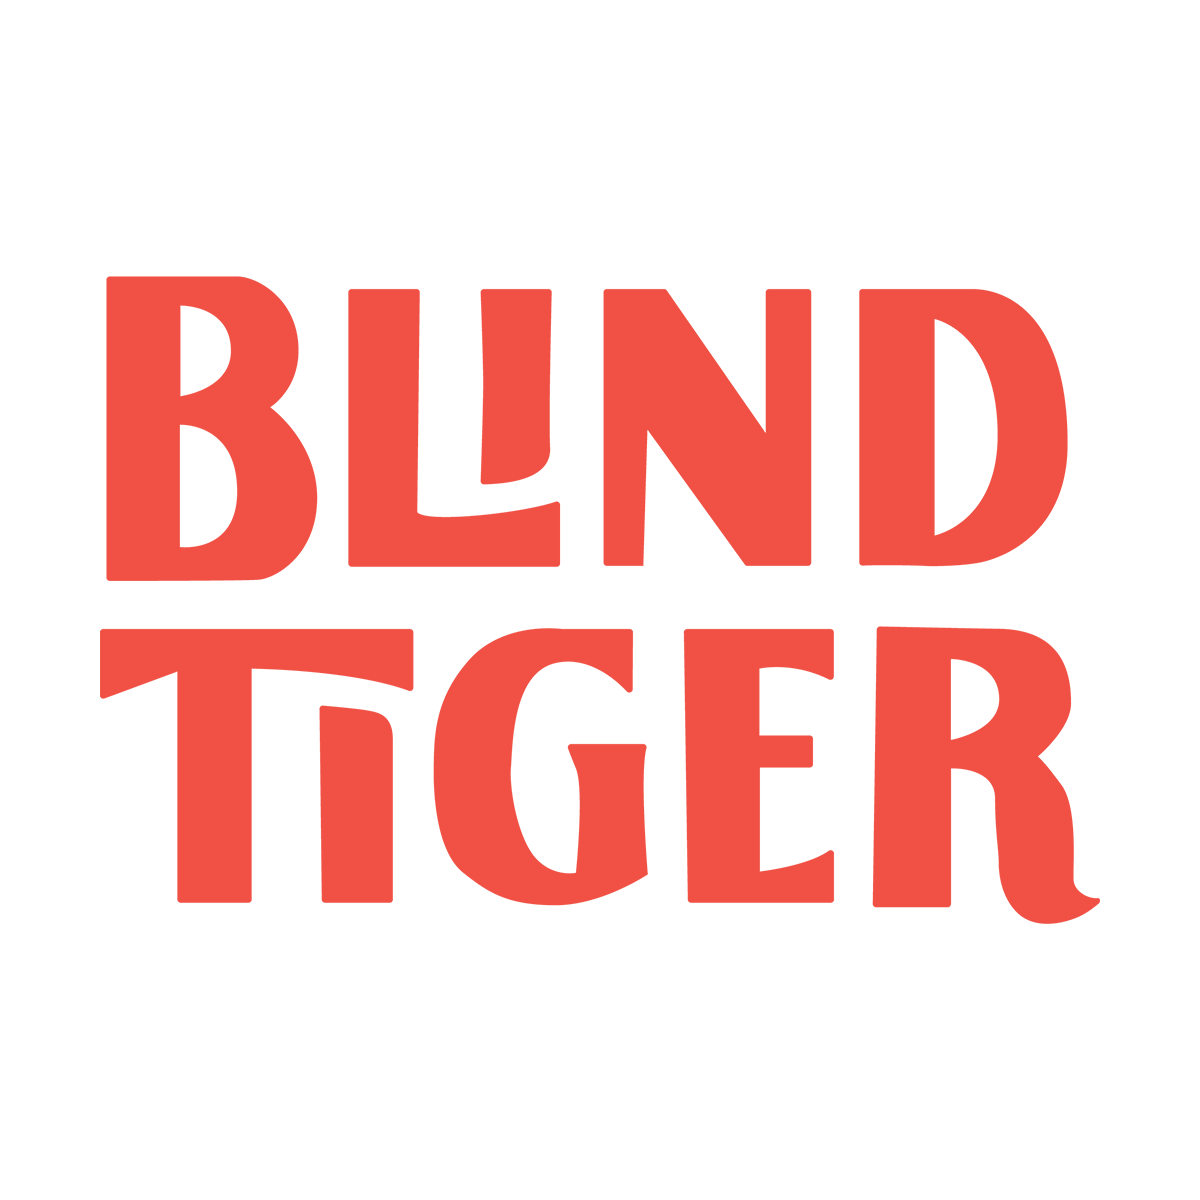 Blindtiger Design on LogoLounge